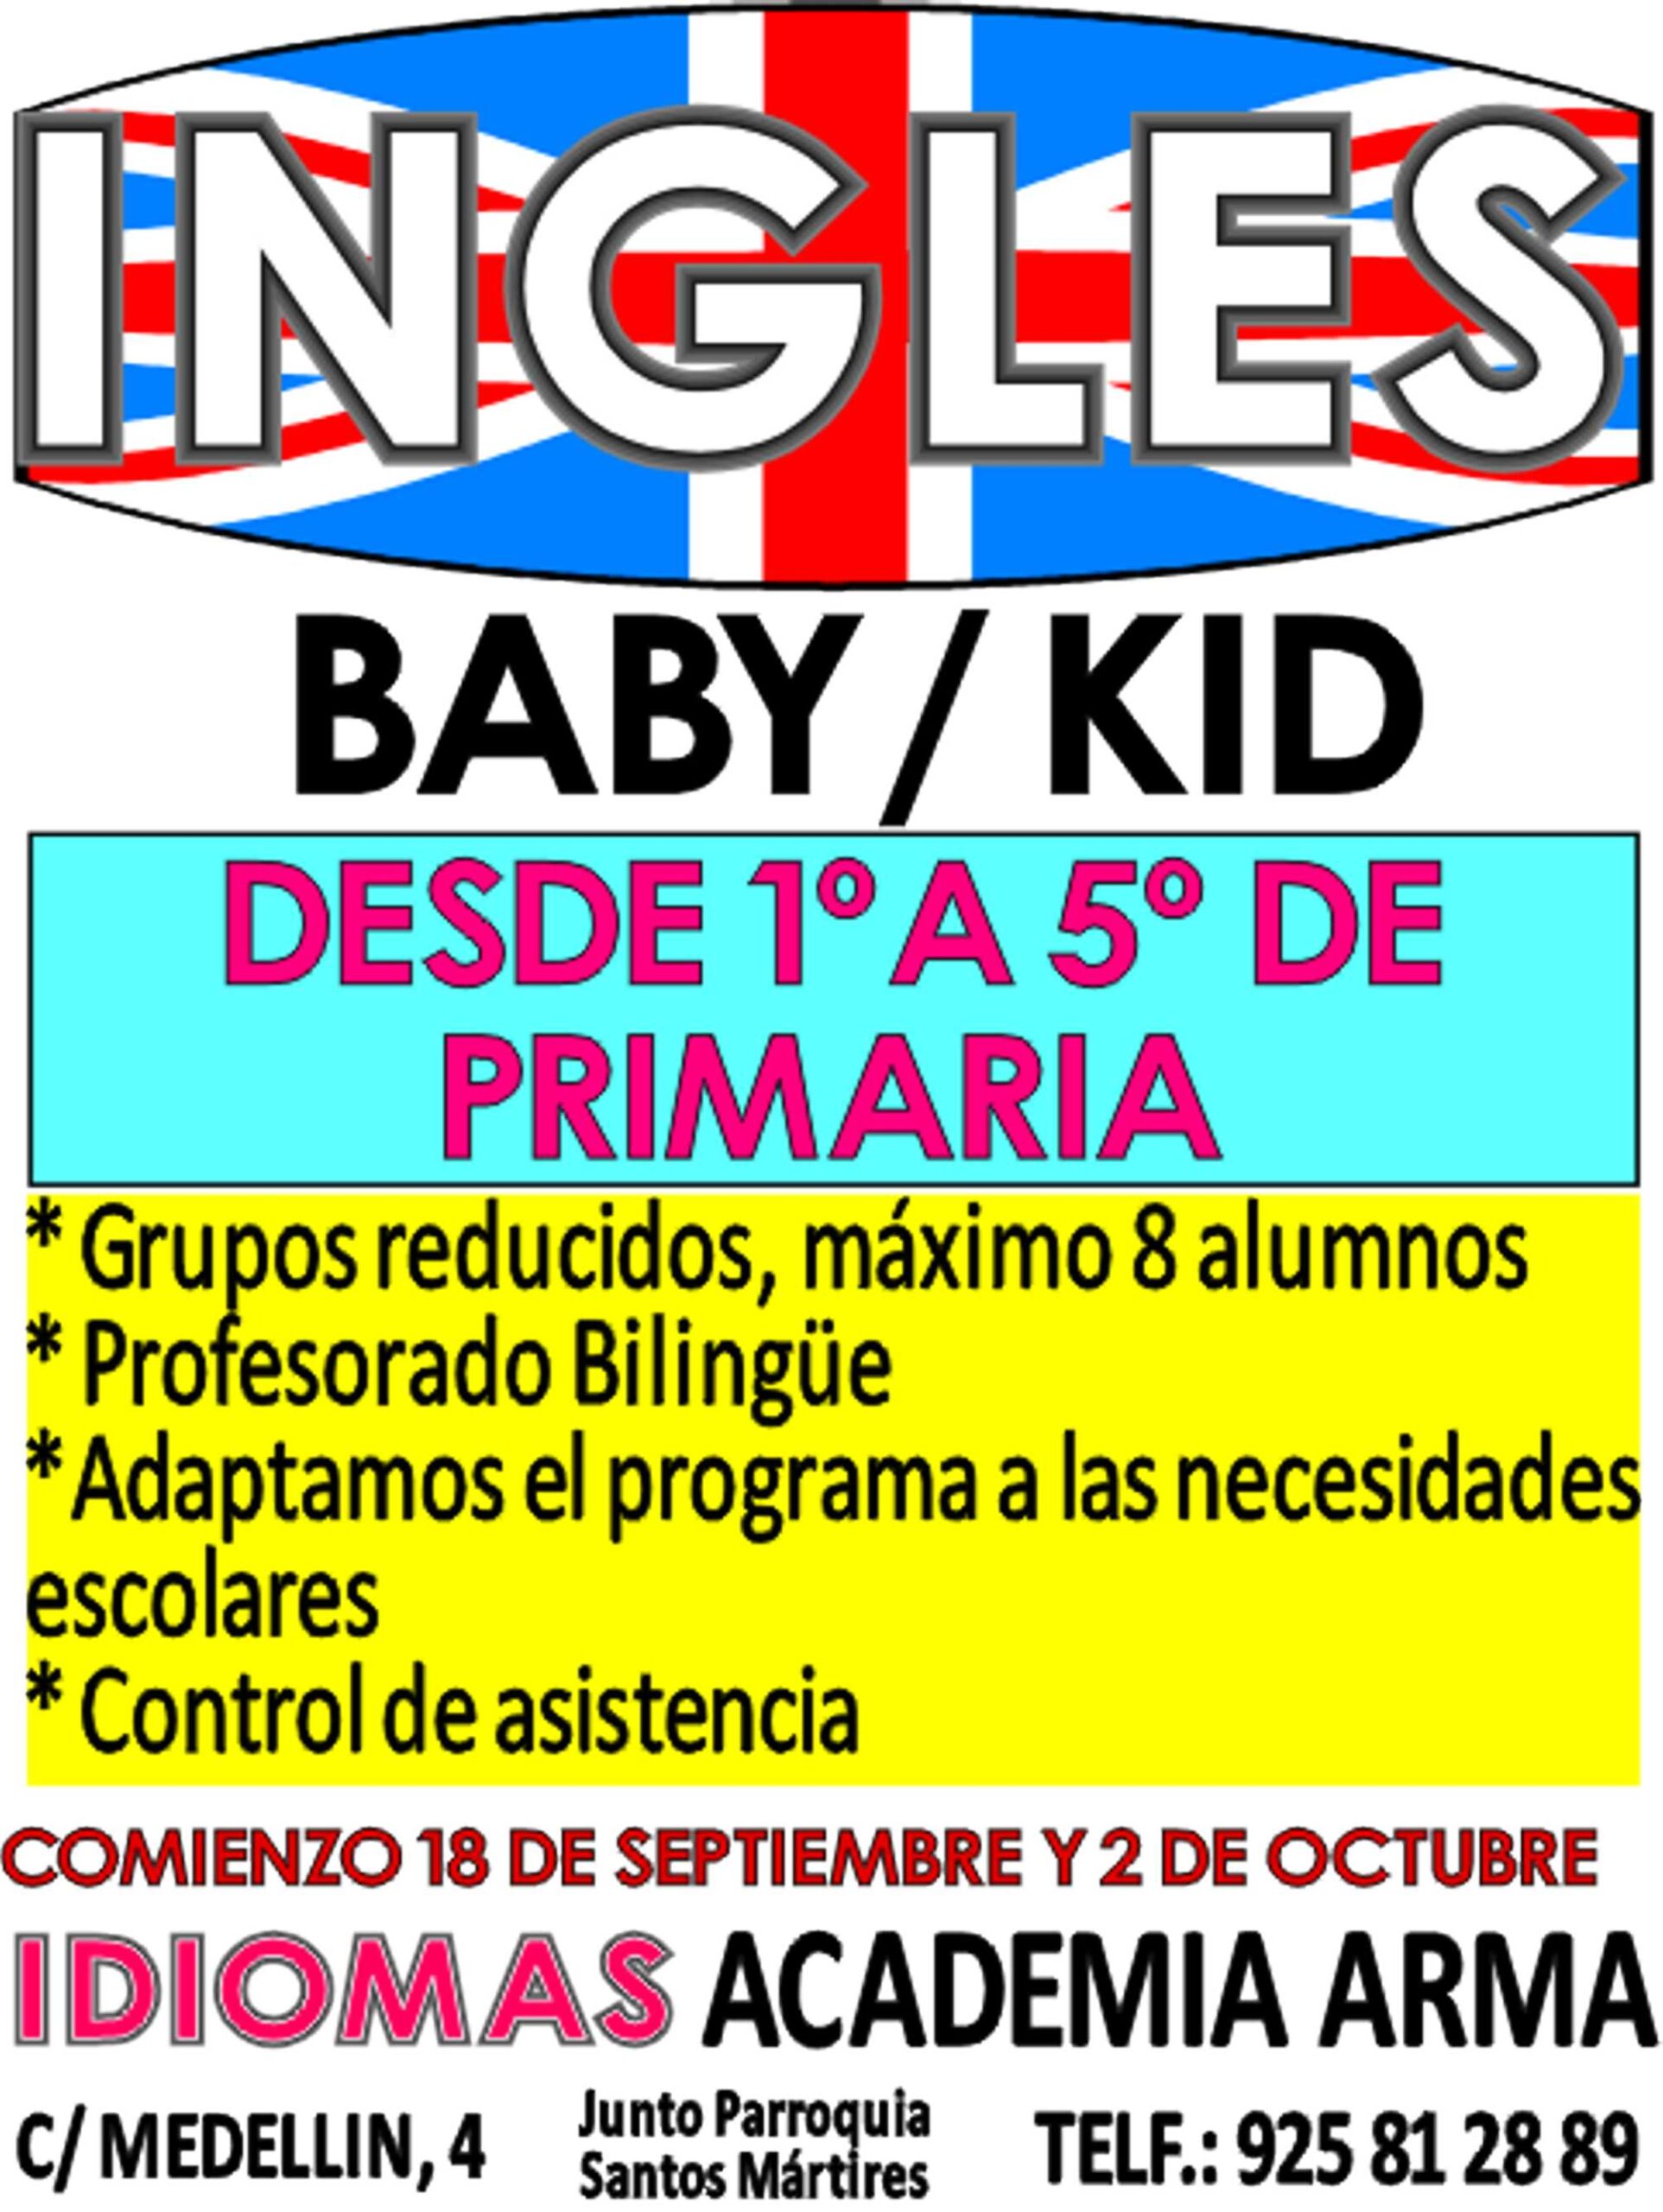 INGLES BABY 300 1 scaled - Inicio